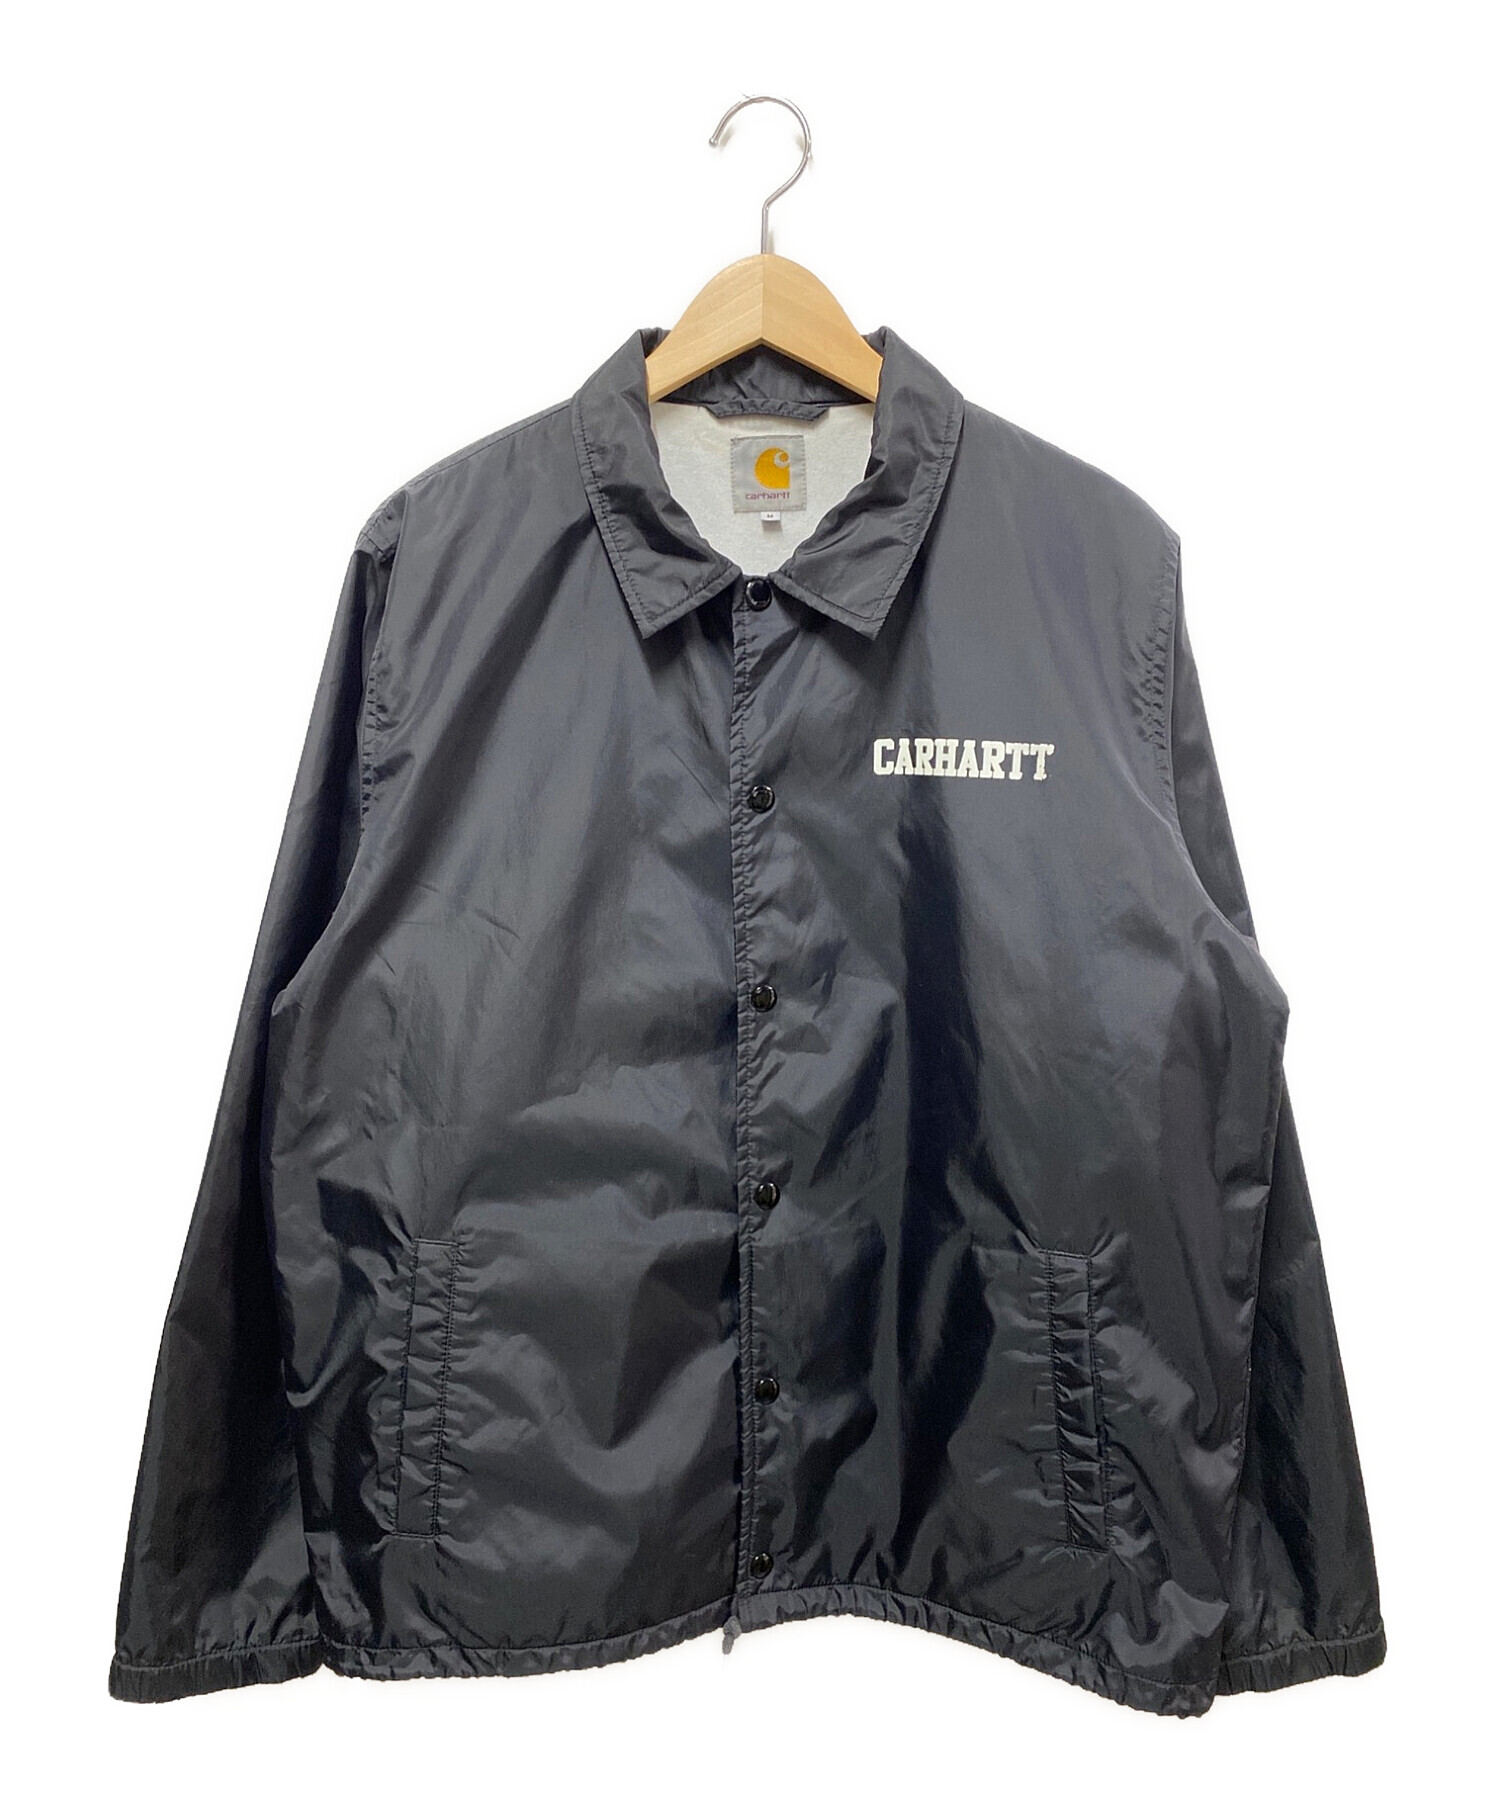 CarHartt (カーハート) コーチジャケット ブラック サイズ:M